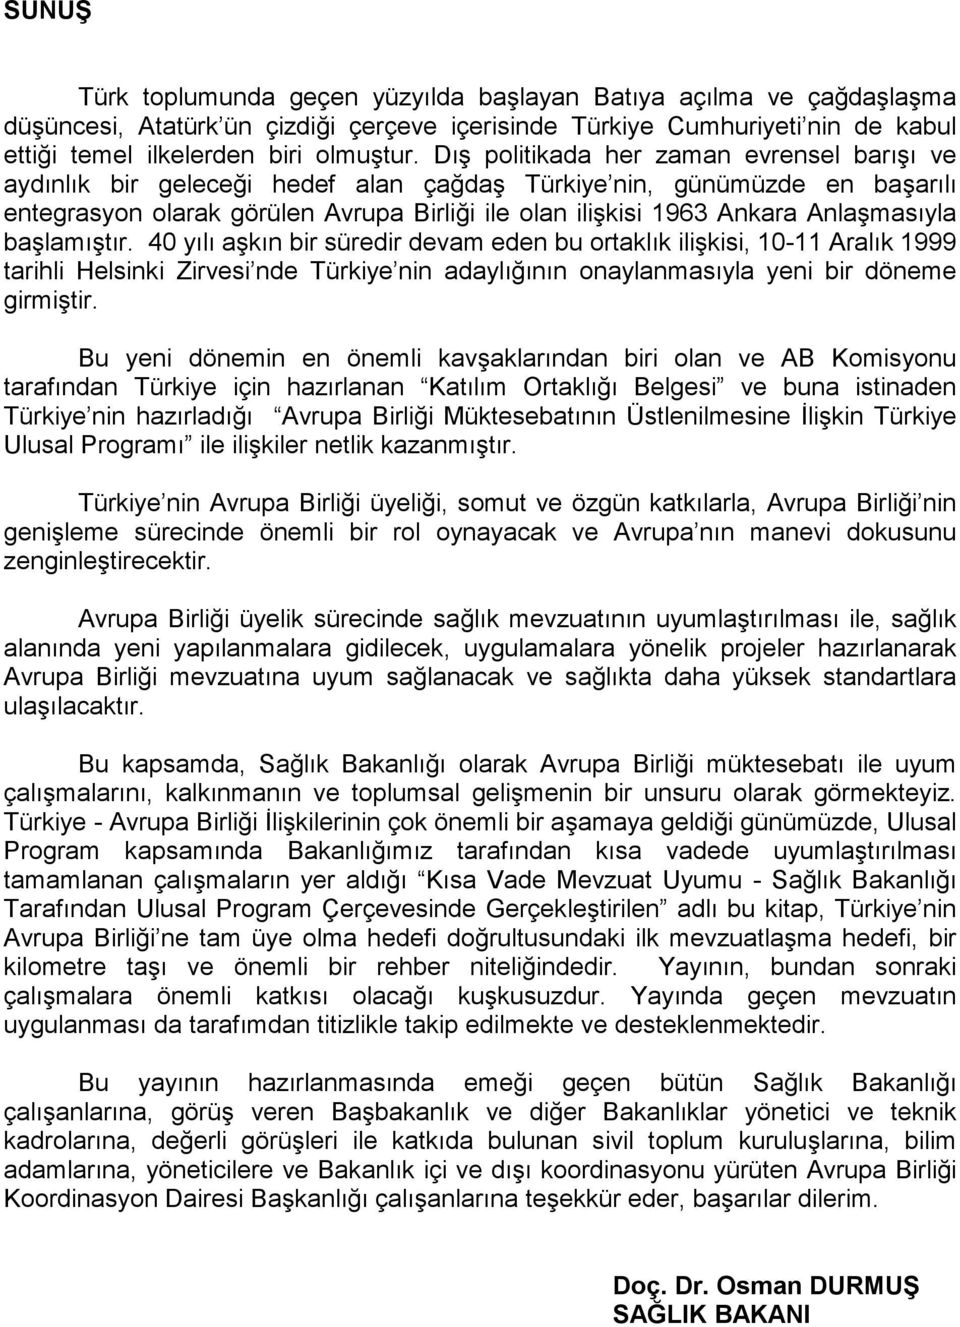 Anlaşmasıyla başlamıştır. 40 yılı aşkın bir süredir devam eden bu ortaklık ilişkisi, 10-11 Aralık 1999 tarihli Helsinki Zirvesi nde Türkiye nin adaylığının onaylanmasıyla yeni bir döneme girmiştir.